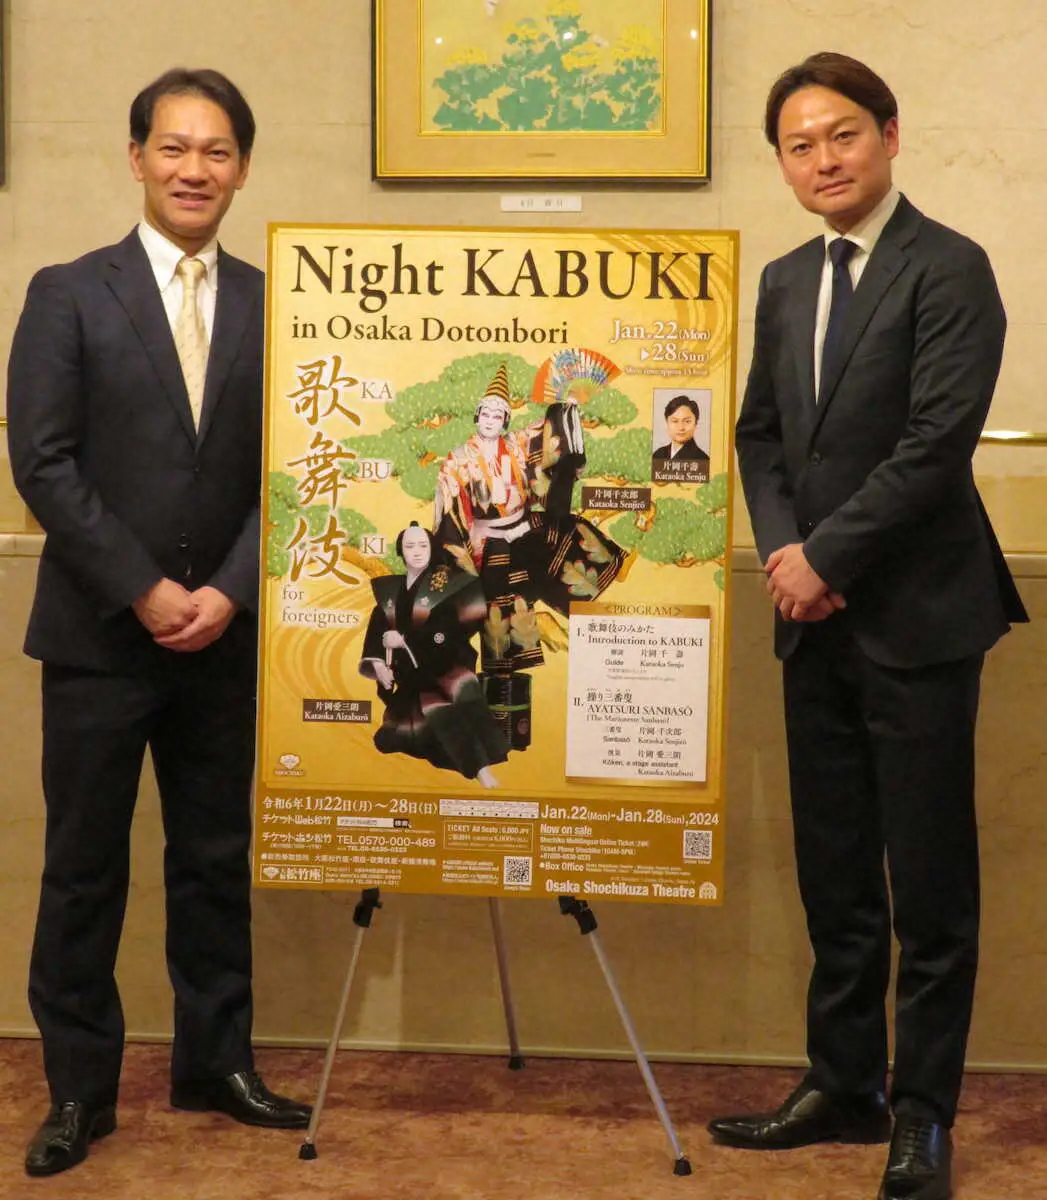 インバウンド向けの新たな歌舞伎公演に意欲を見せる片岡千次郎（左）と片岡千壽